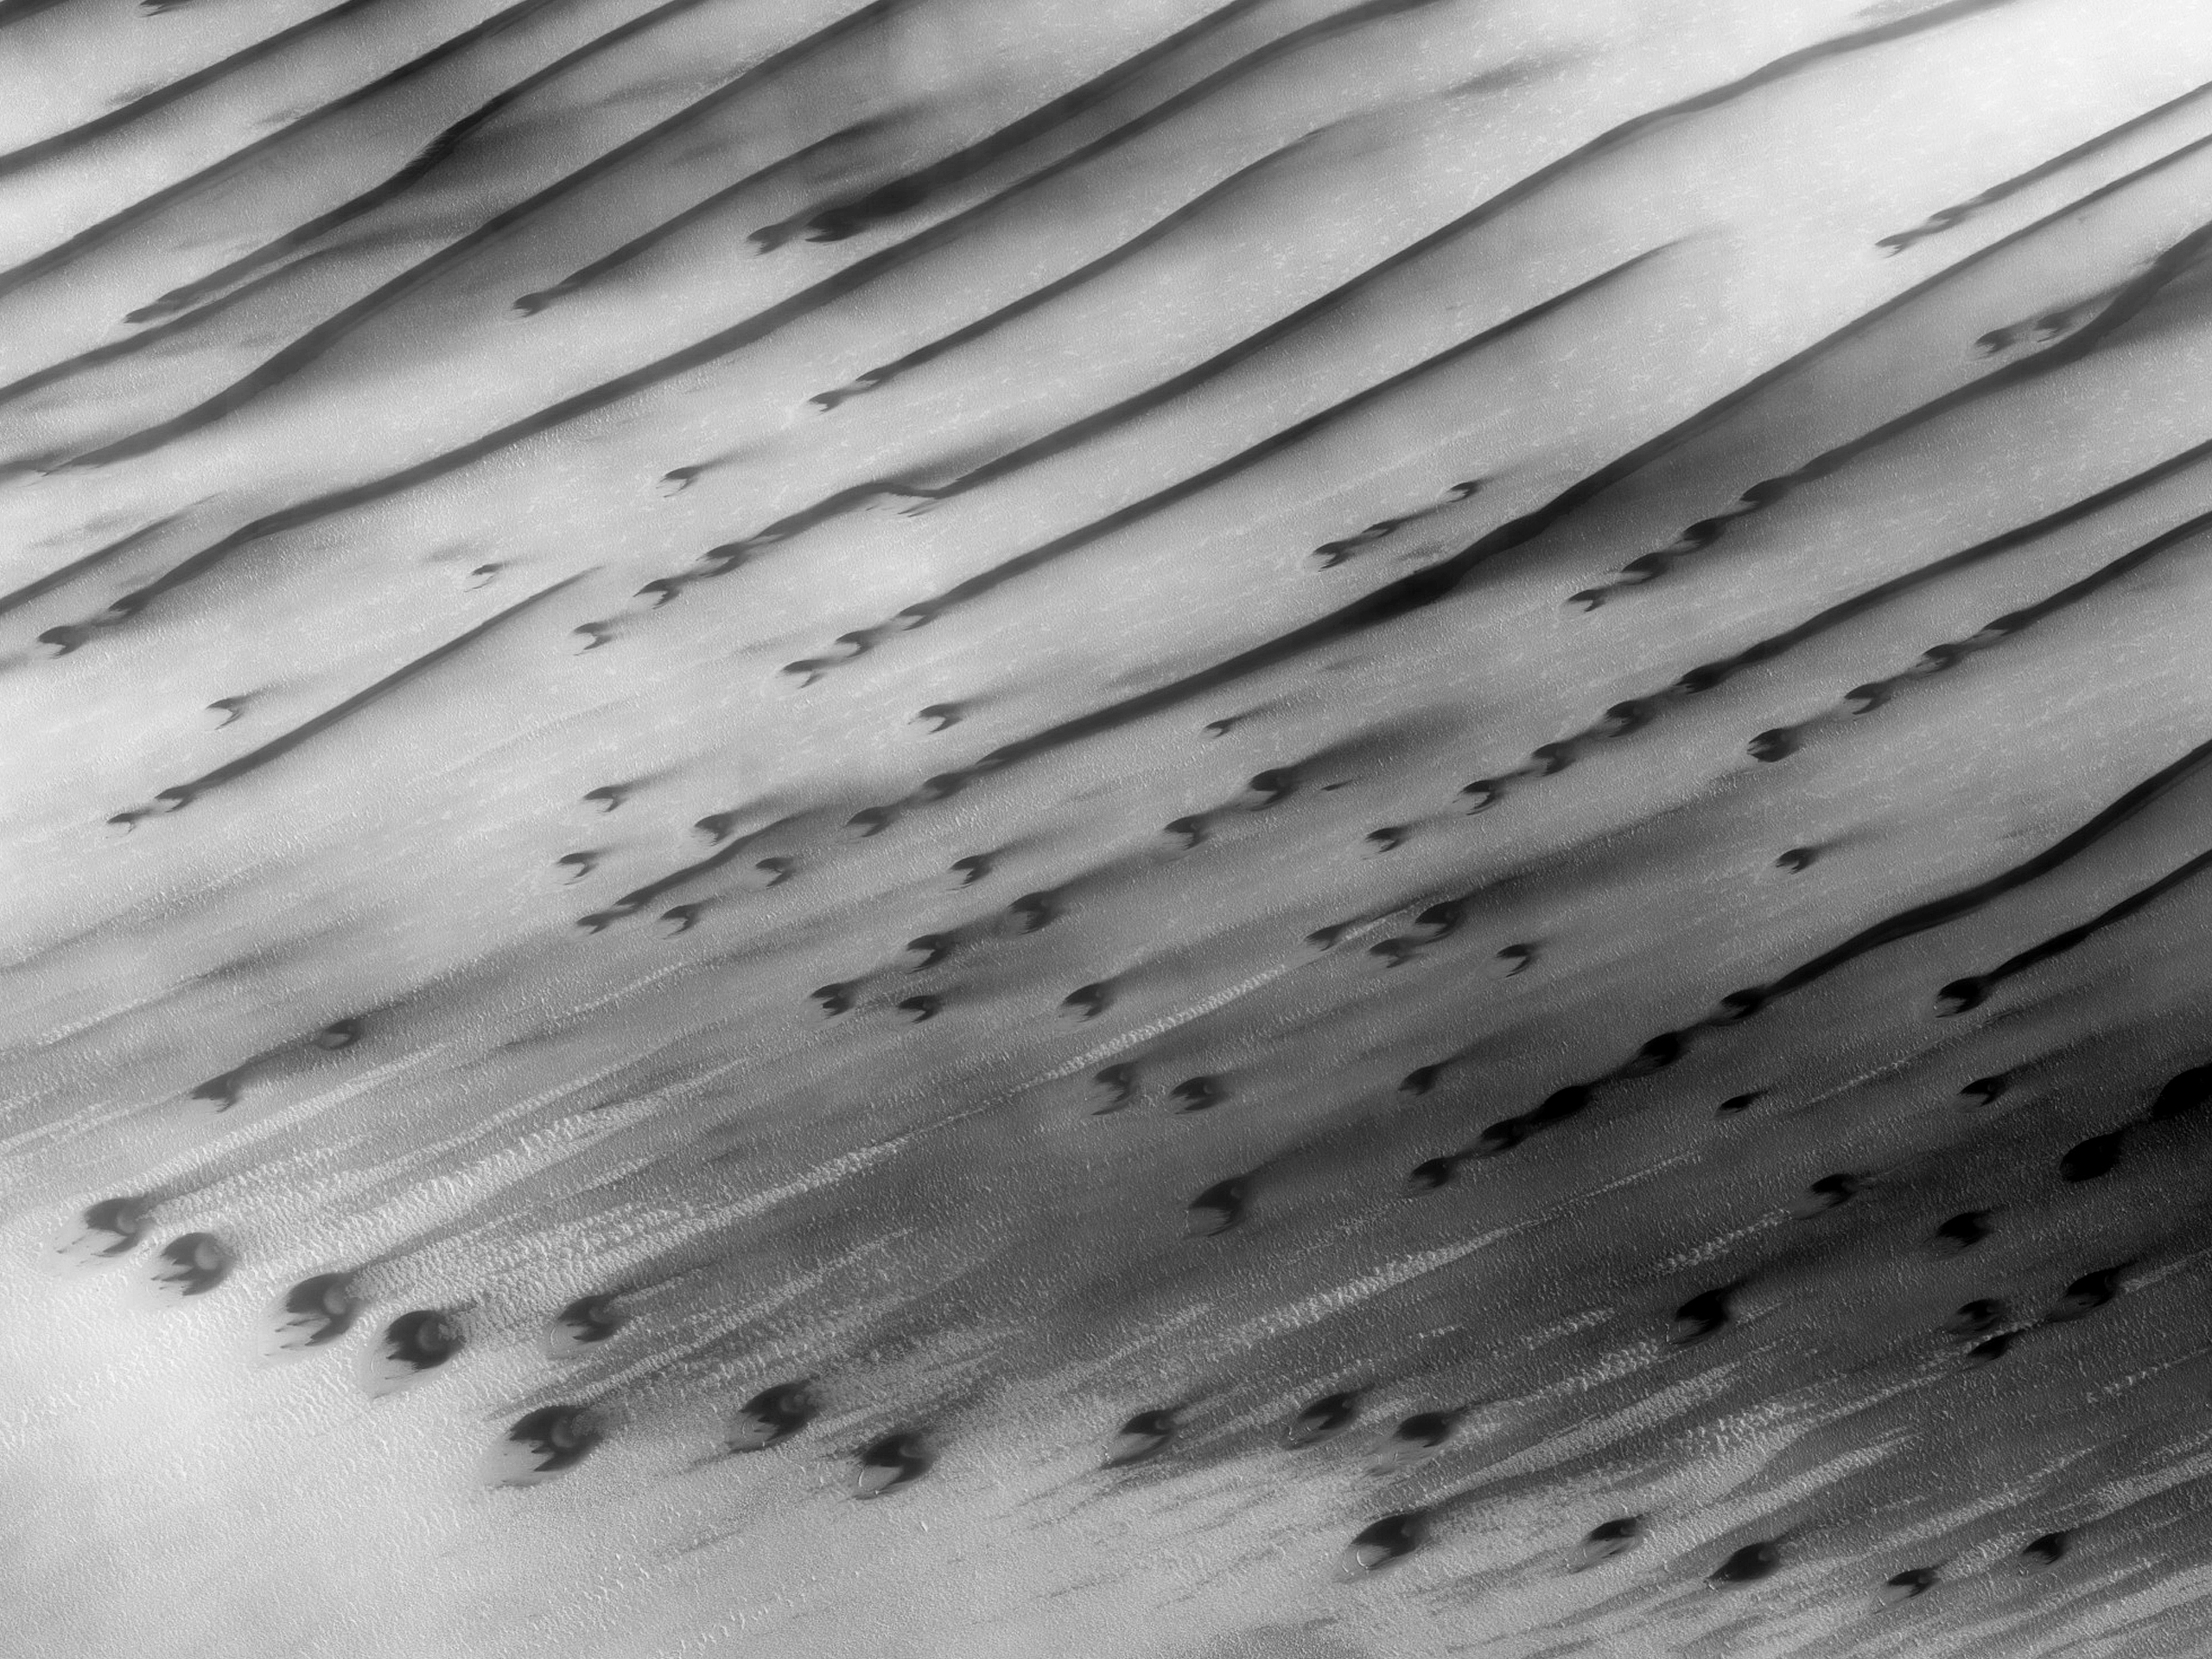 كثبان هلالية و كثبان طولية في Chasma Boreale